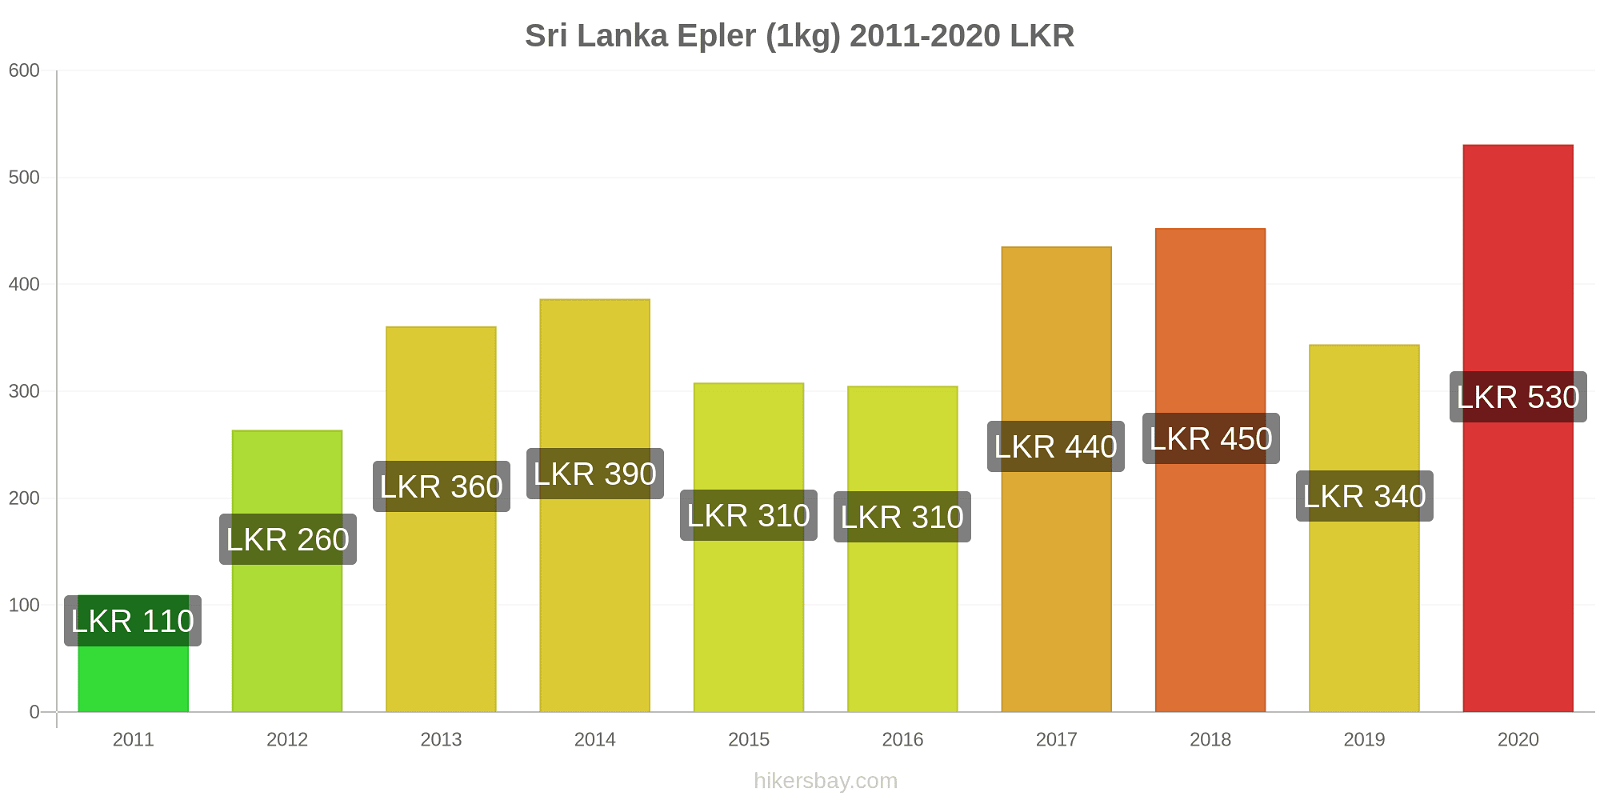 Sri Lanka prisendringer Epler (1kg) hikersbay.com